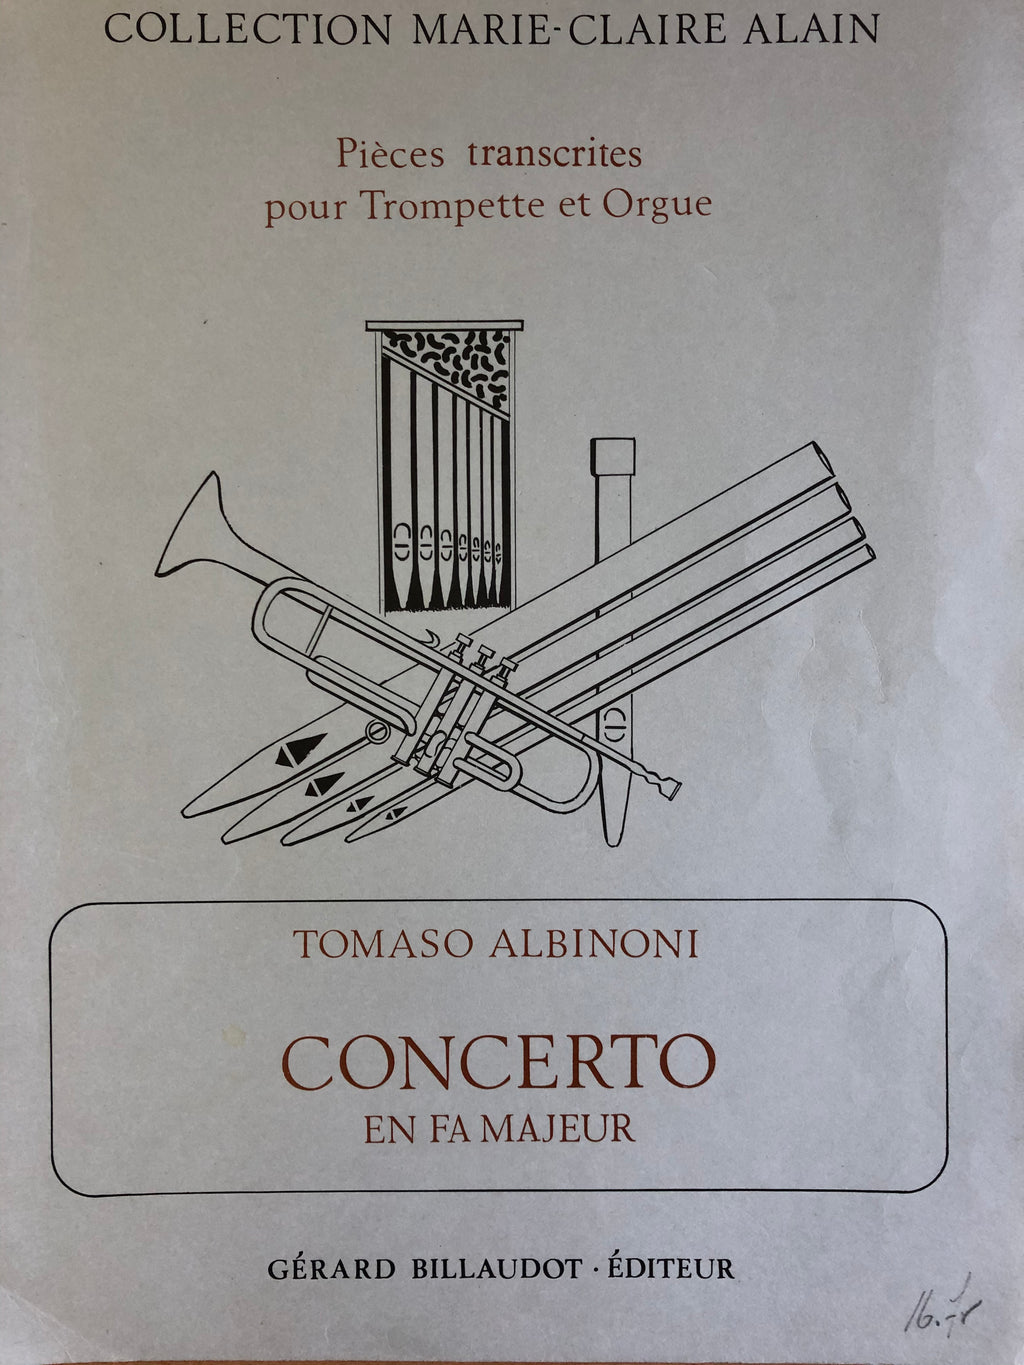 Concerto in Fa Majeur, Tomaso Albinoni, voor trompet en orgel - Scattando Verkleedhuis